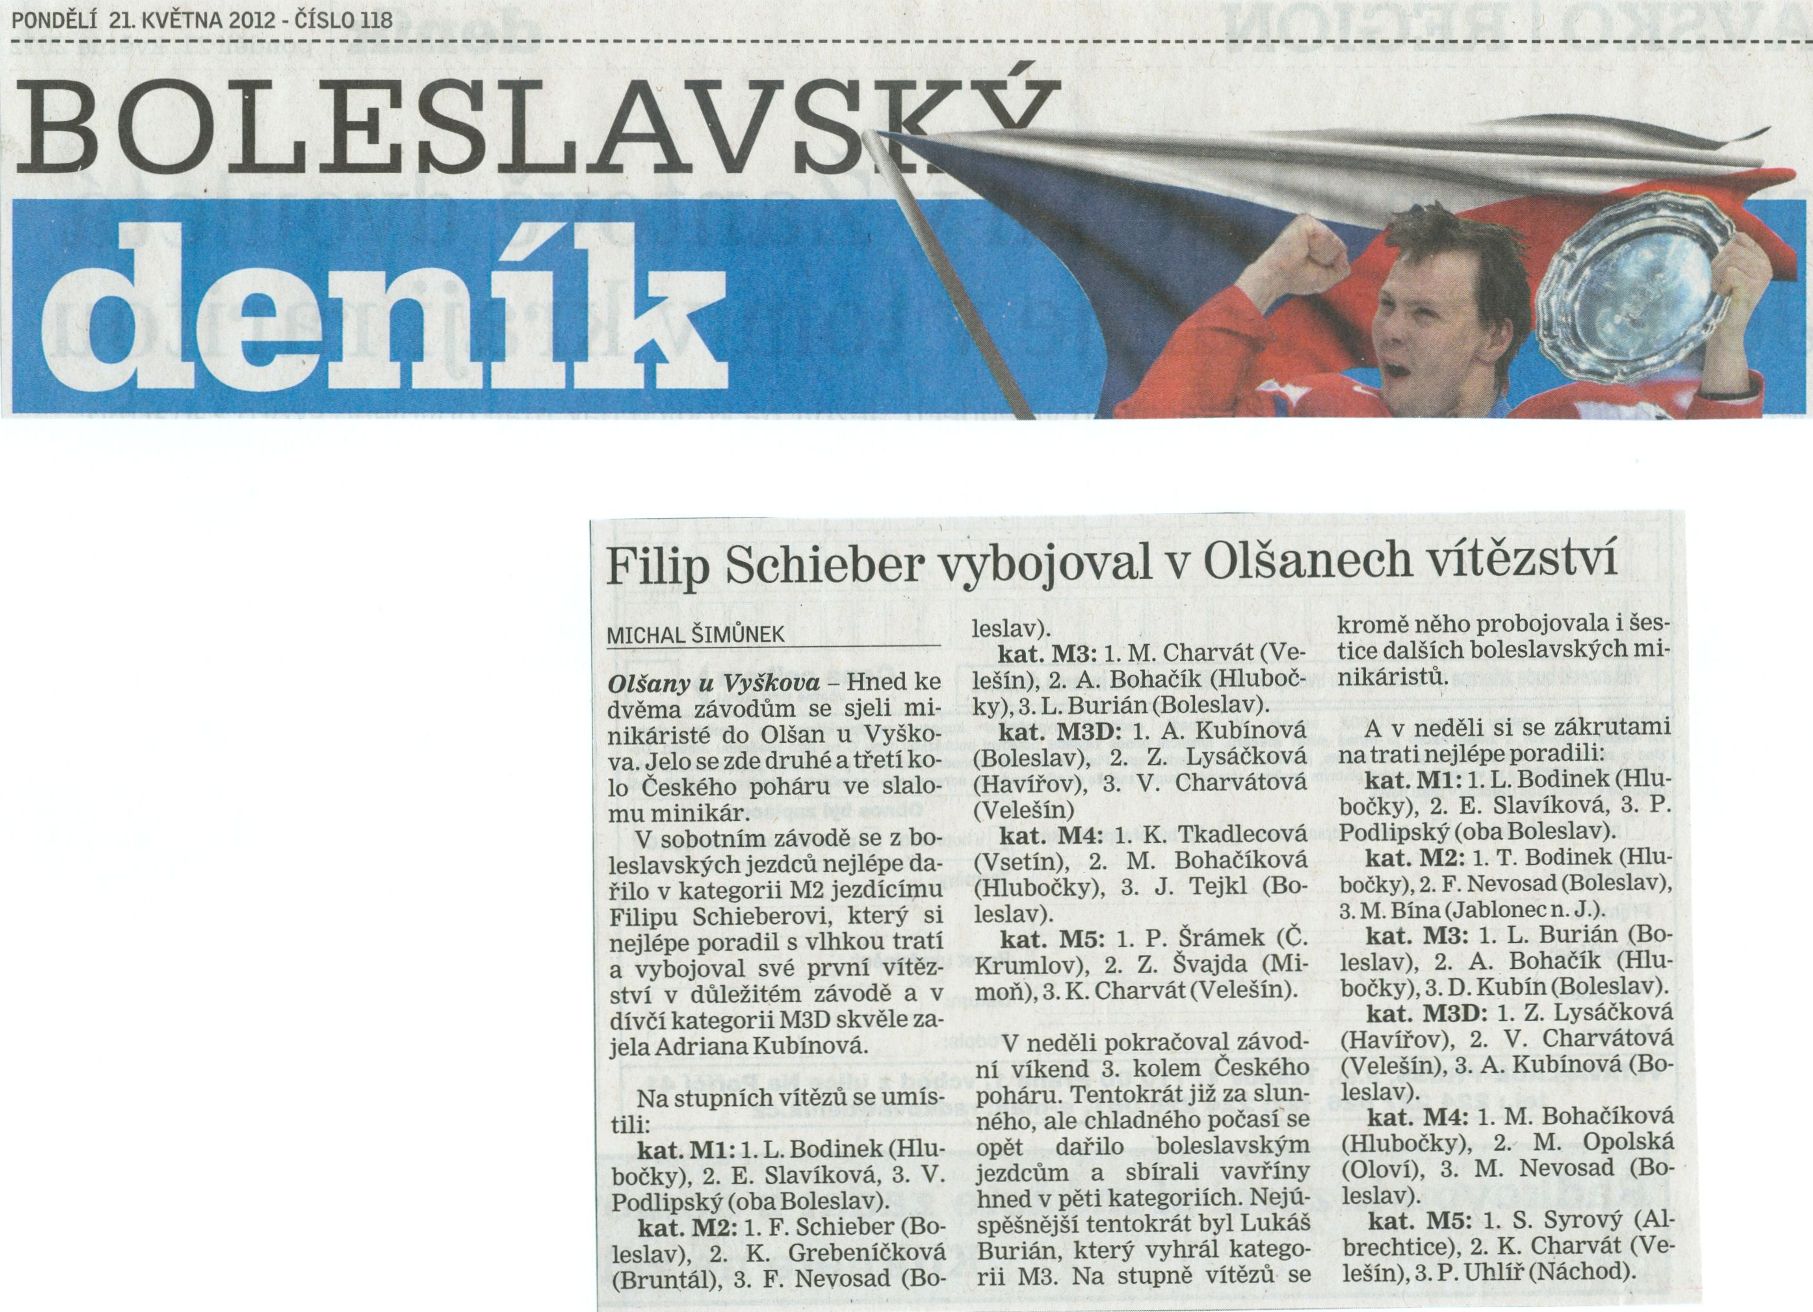 2012-5-21 Boleslavsky denik-x